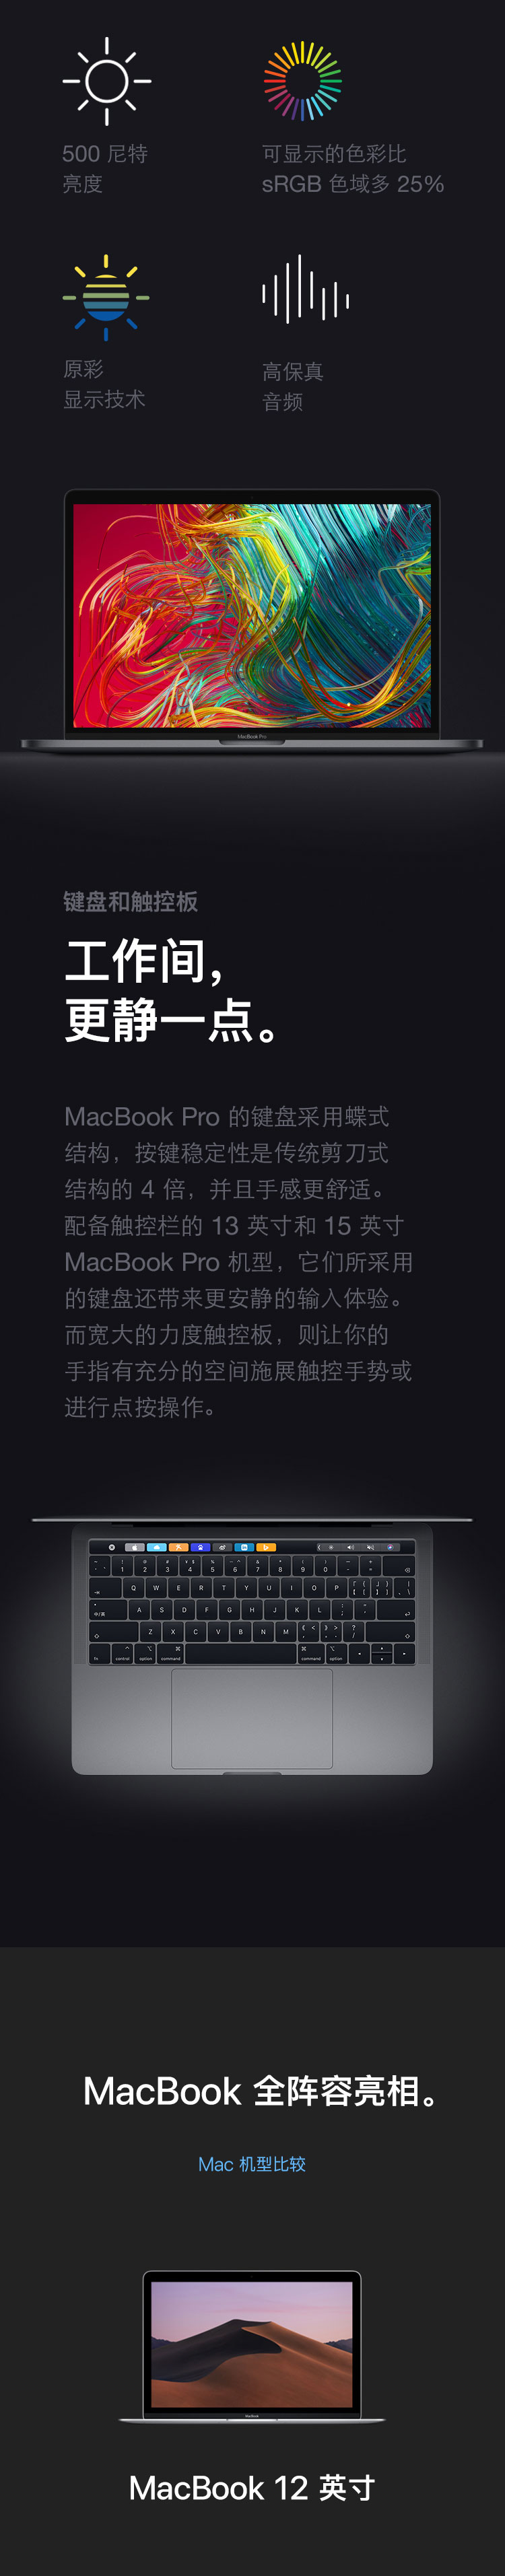 中山手机网 苹果(apple) macbook pro 2019手机专卖